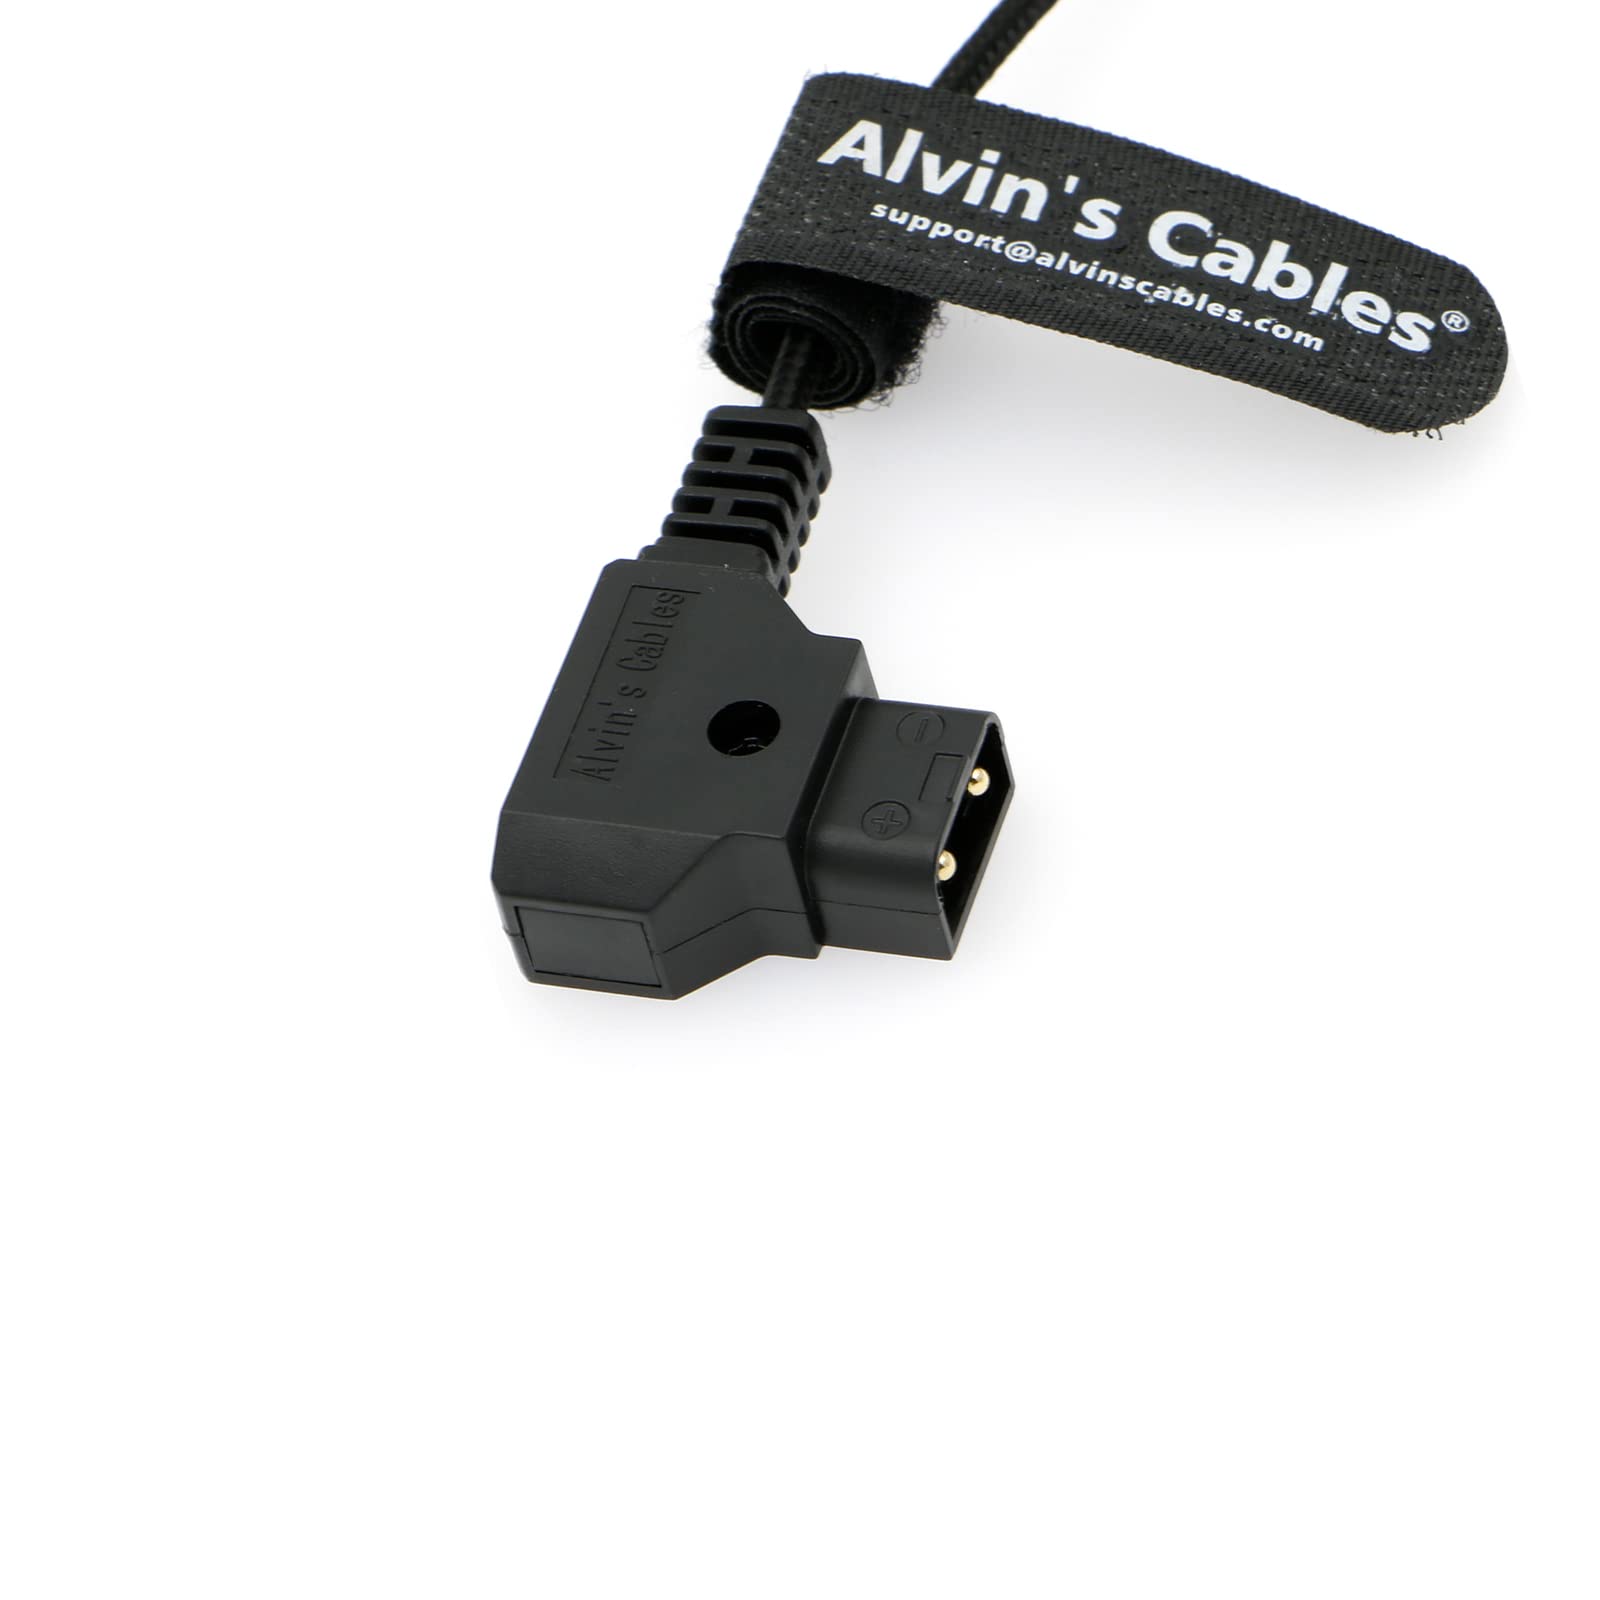 Alvin's Cables Flexibles Stromkabel für RED Komodo-Kamera, drehbar, rechtwinklig, 2-polige Buchse auf D-Tap, geflochtener Draht, 80 cm | 31,5 Zoll